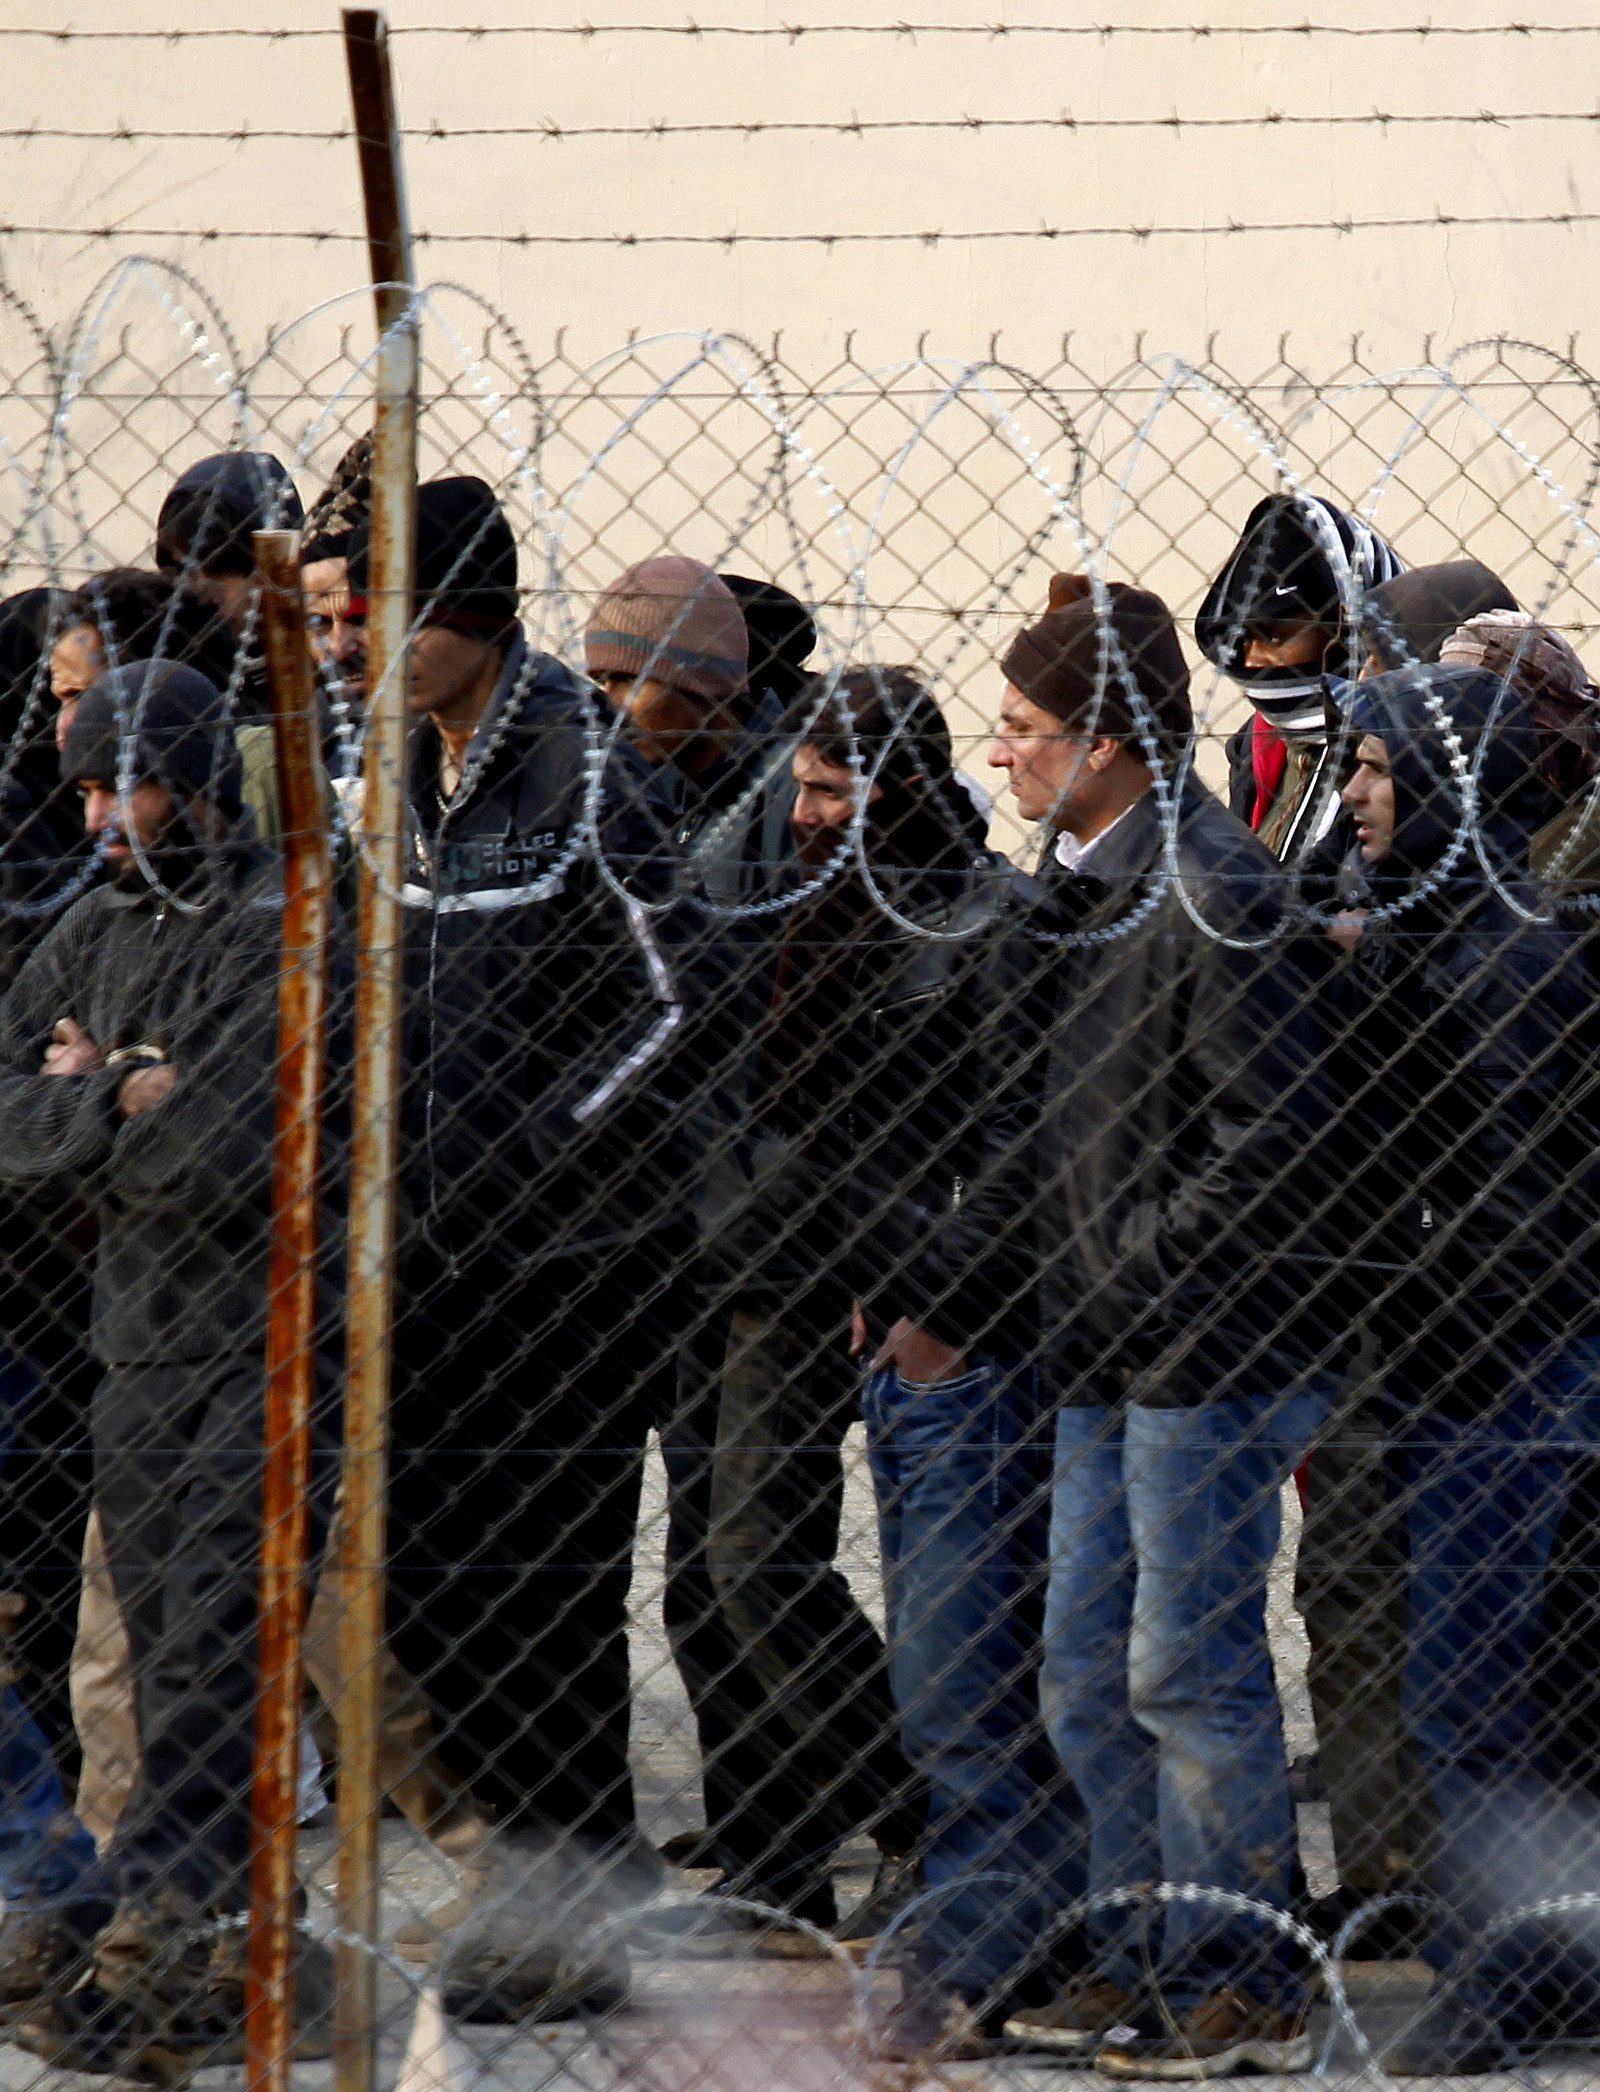 HELLAS: Asylsøkere stimler sammen utenfor gjerdet til en interneringsleir i Fylakio, nær grensen til Tyrkia idesember 2011.